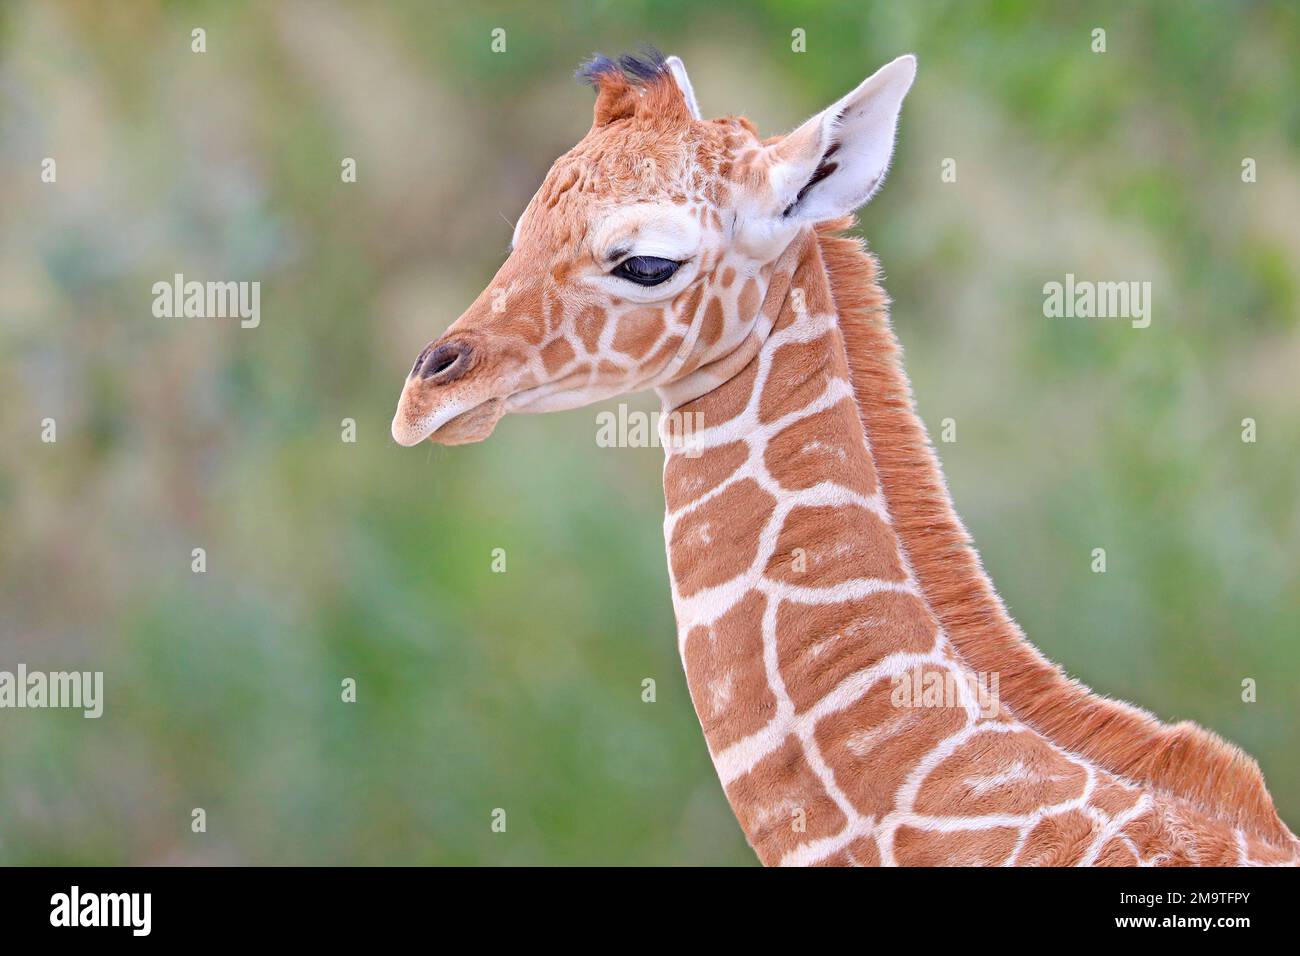 Primo piano della testa della baby giraffa Foto Stock